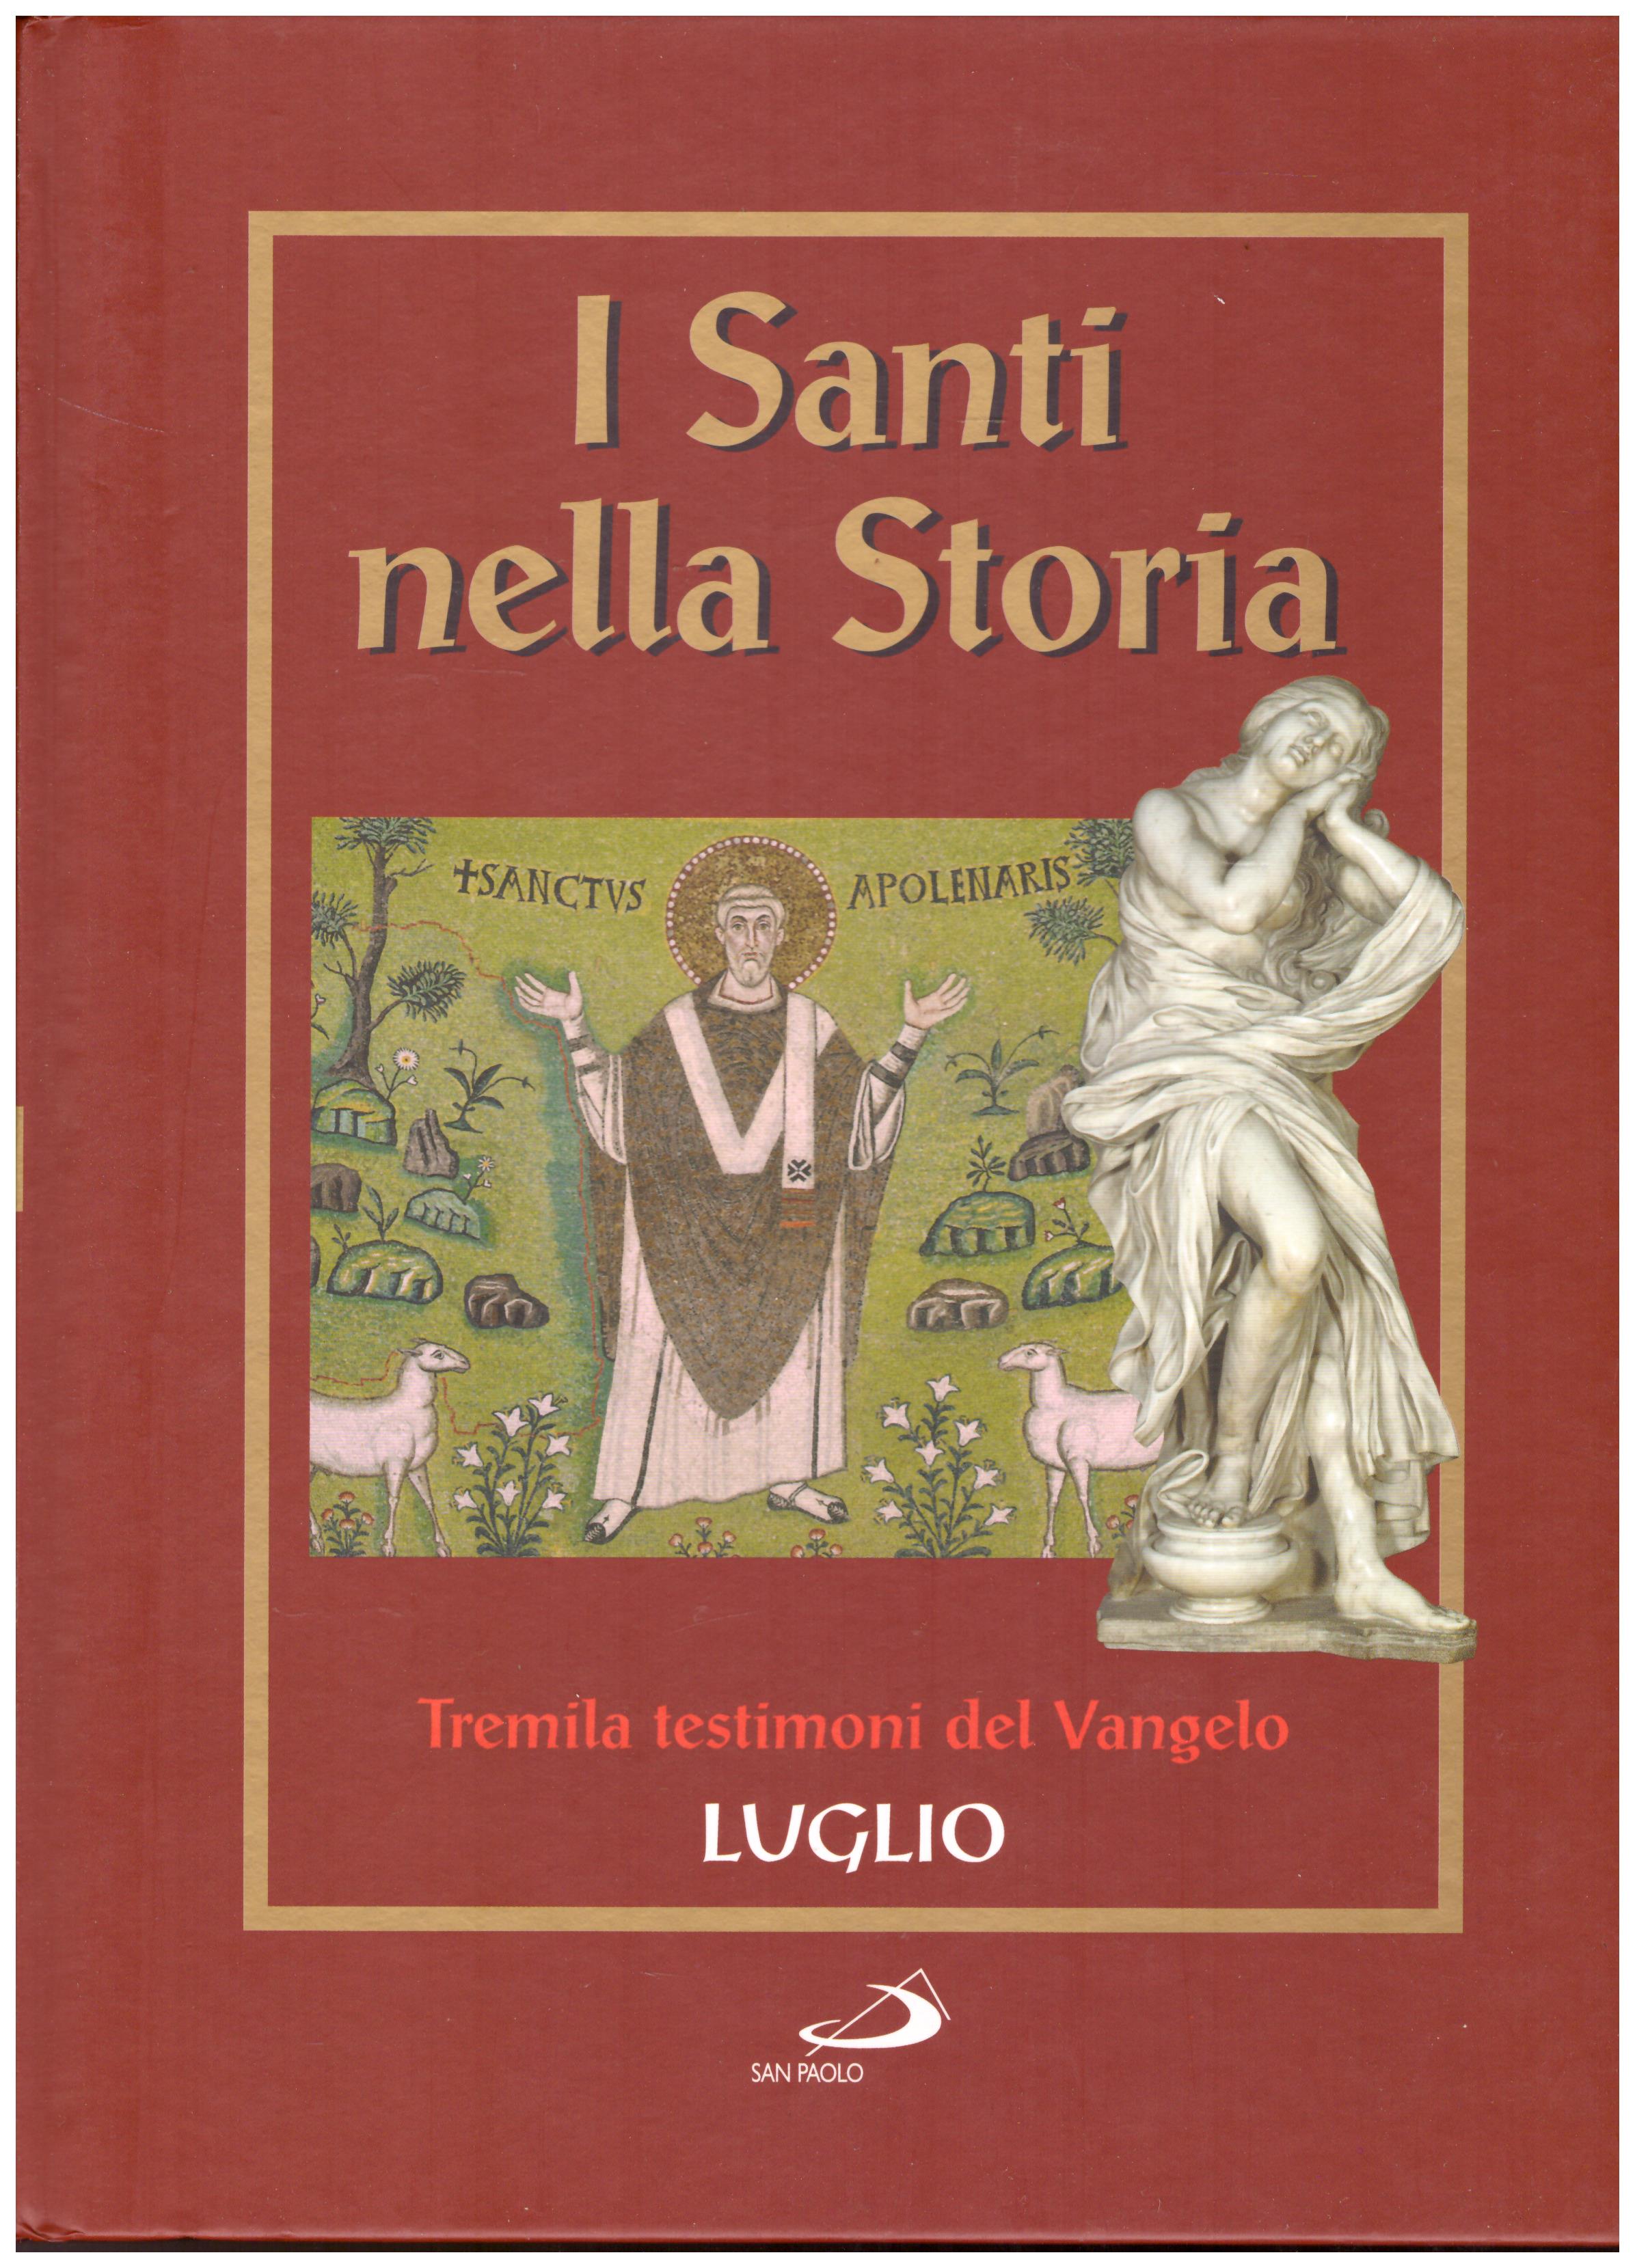 Titolo: I santi nella storia, Luglio Autore: AA.VV.  Editore: San Paolo, 2006